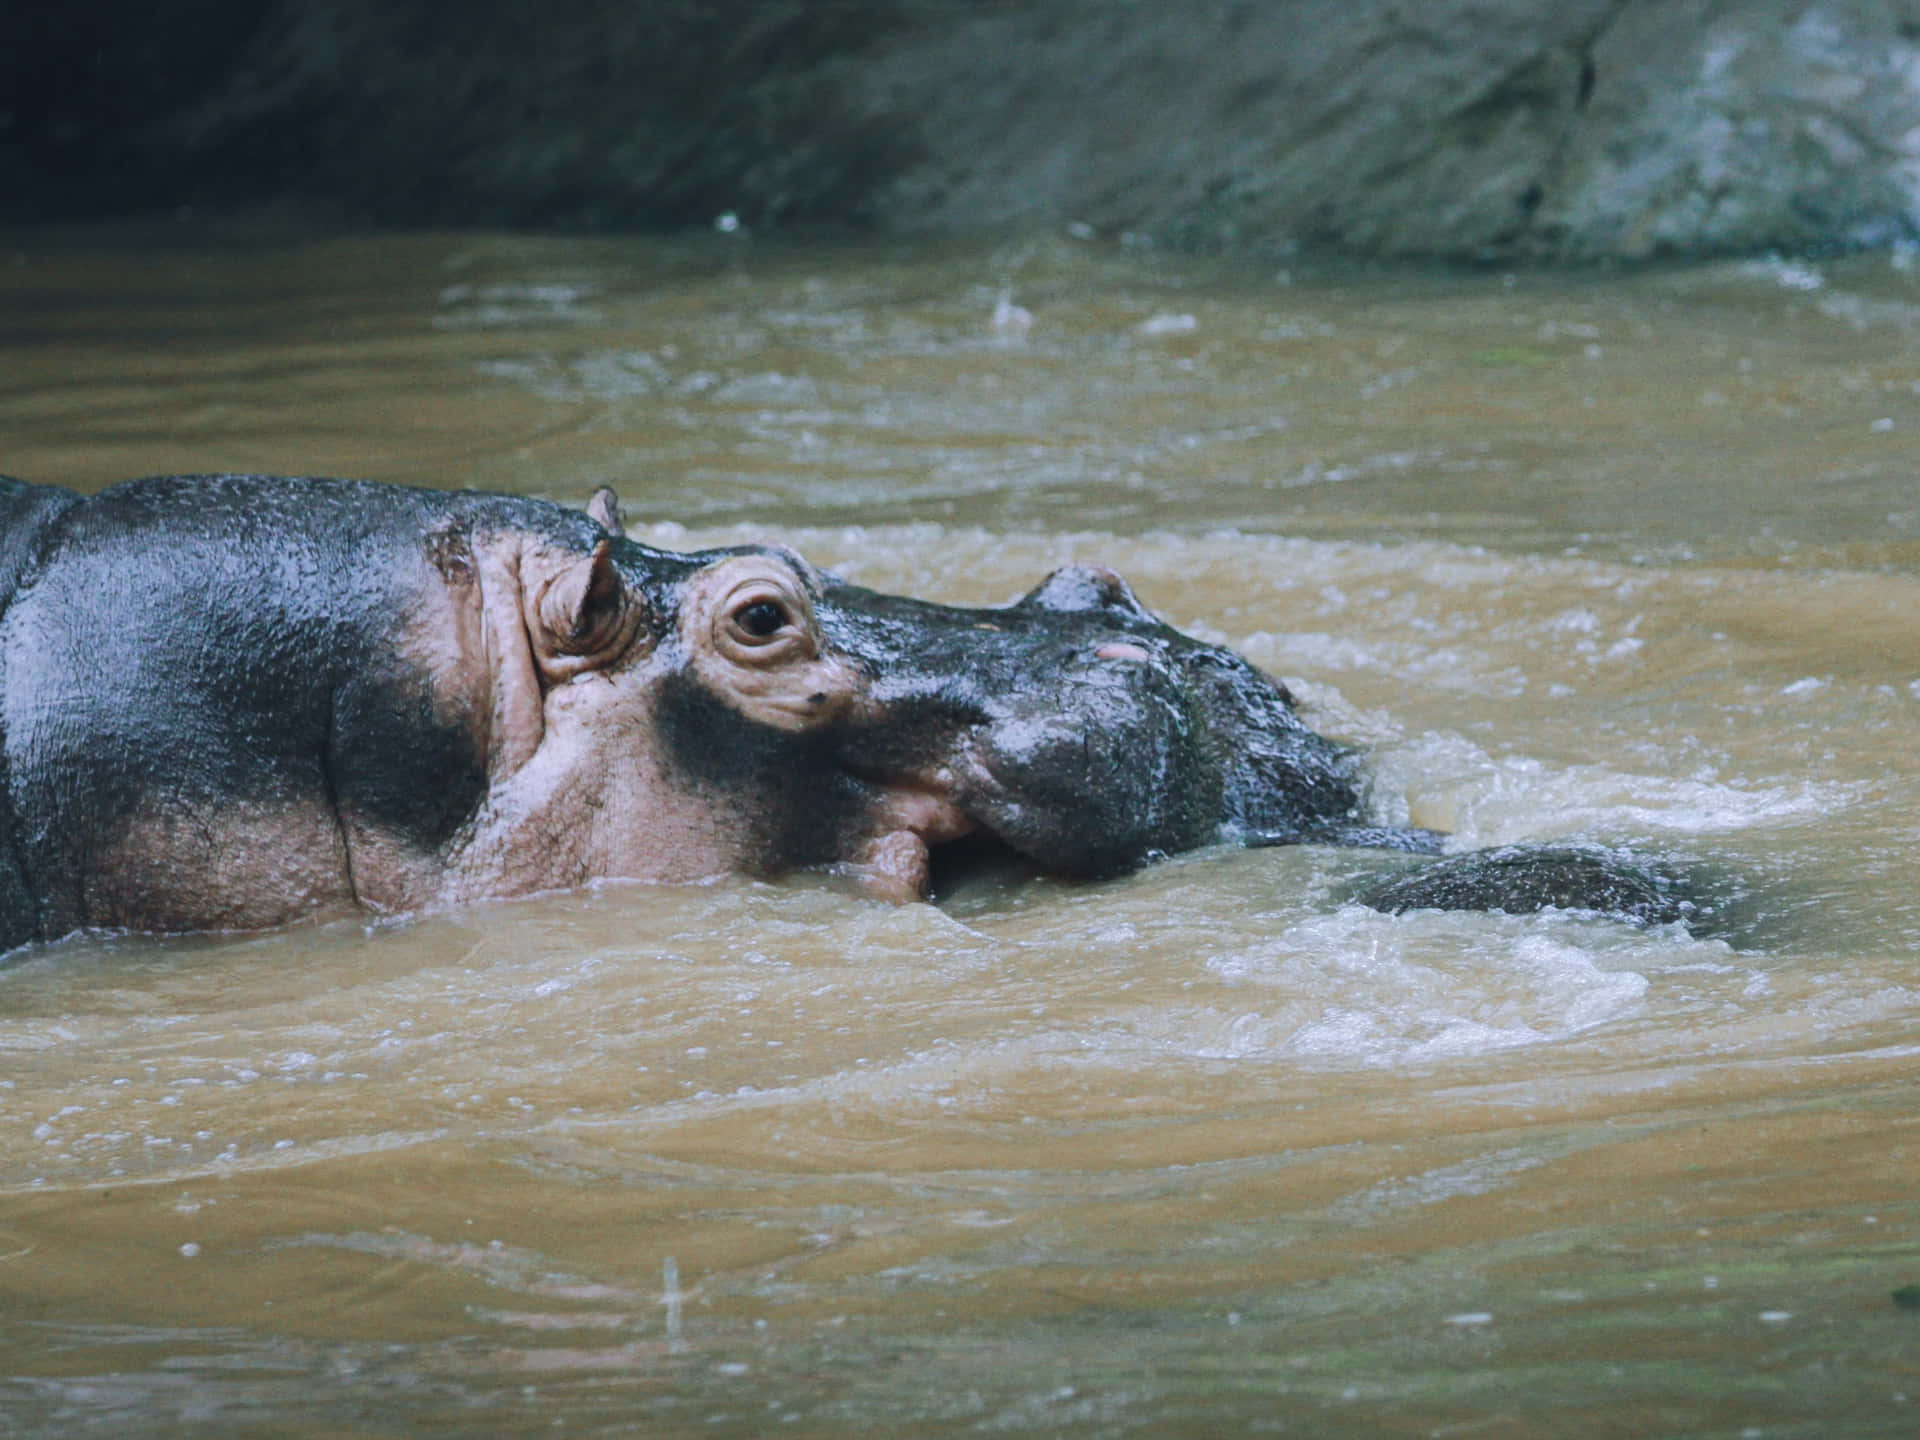 Imagende Un Hipopótamo En Un Río De Agua Turbia